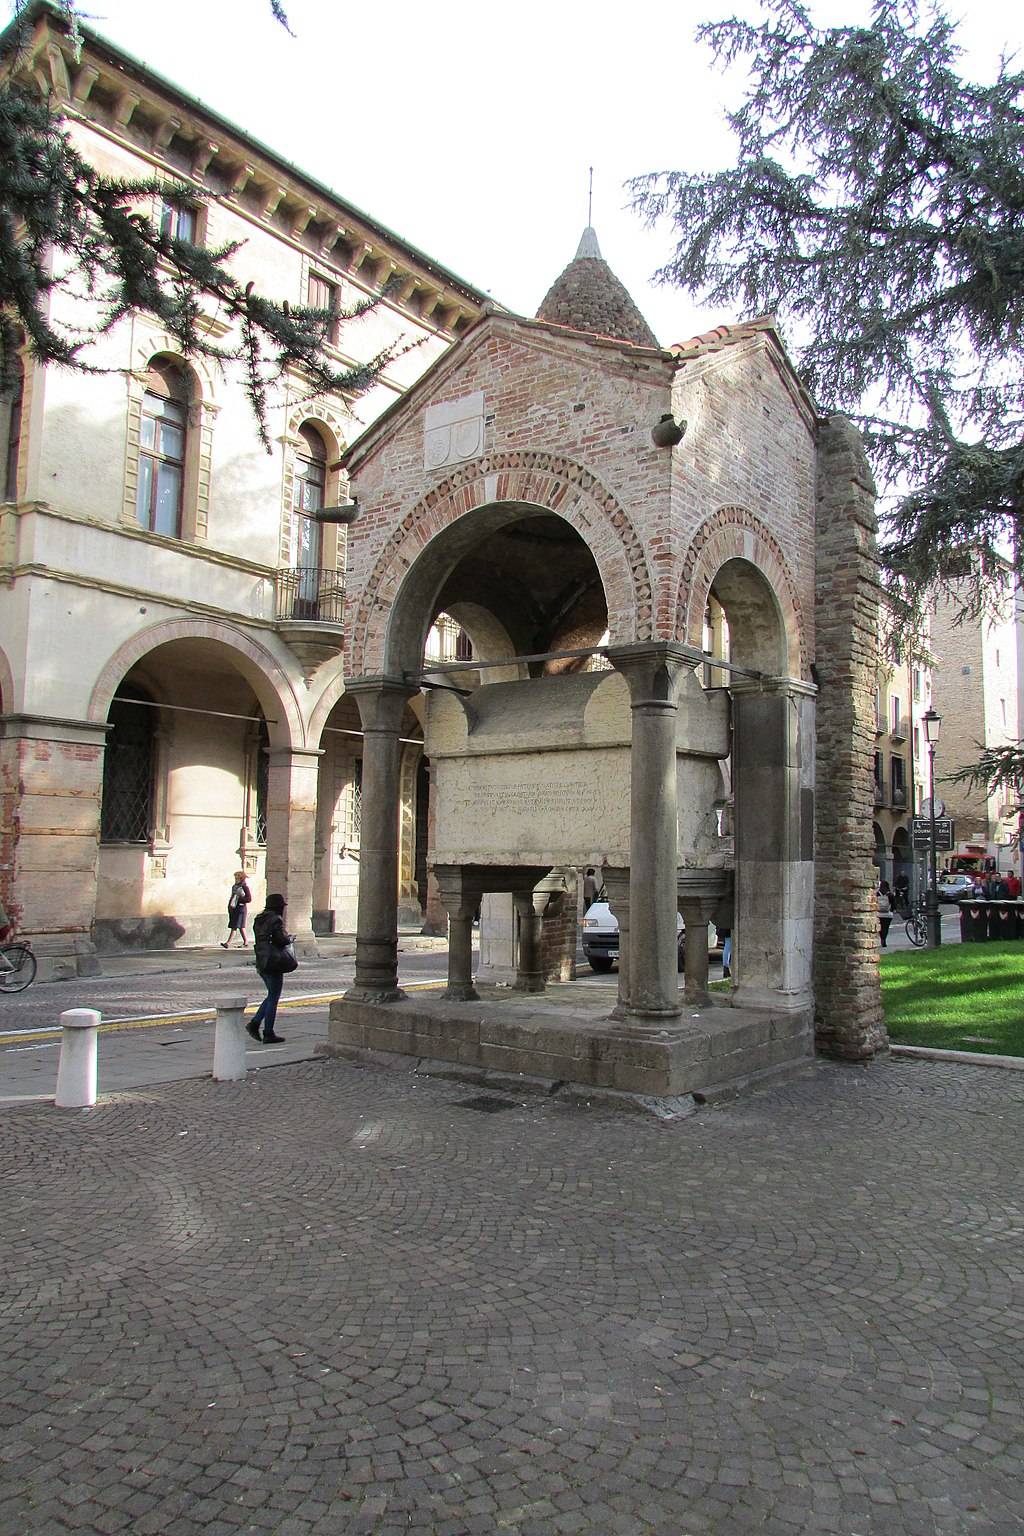 Tomba di Antenore in the Piazza Antenore, Padua